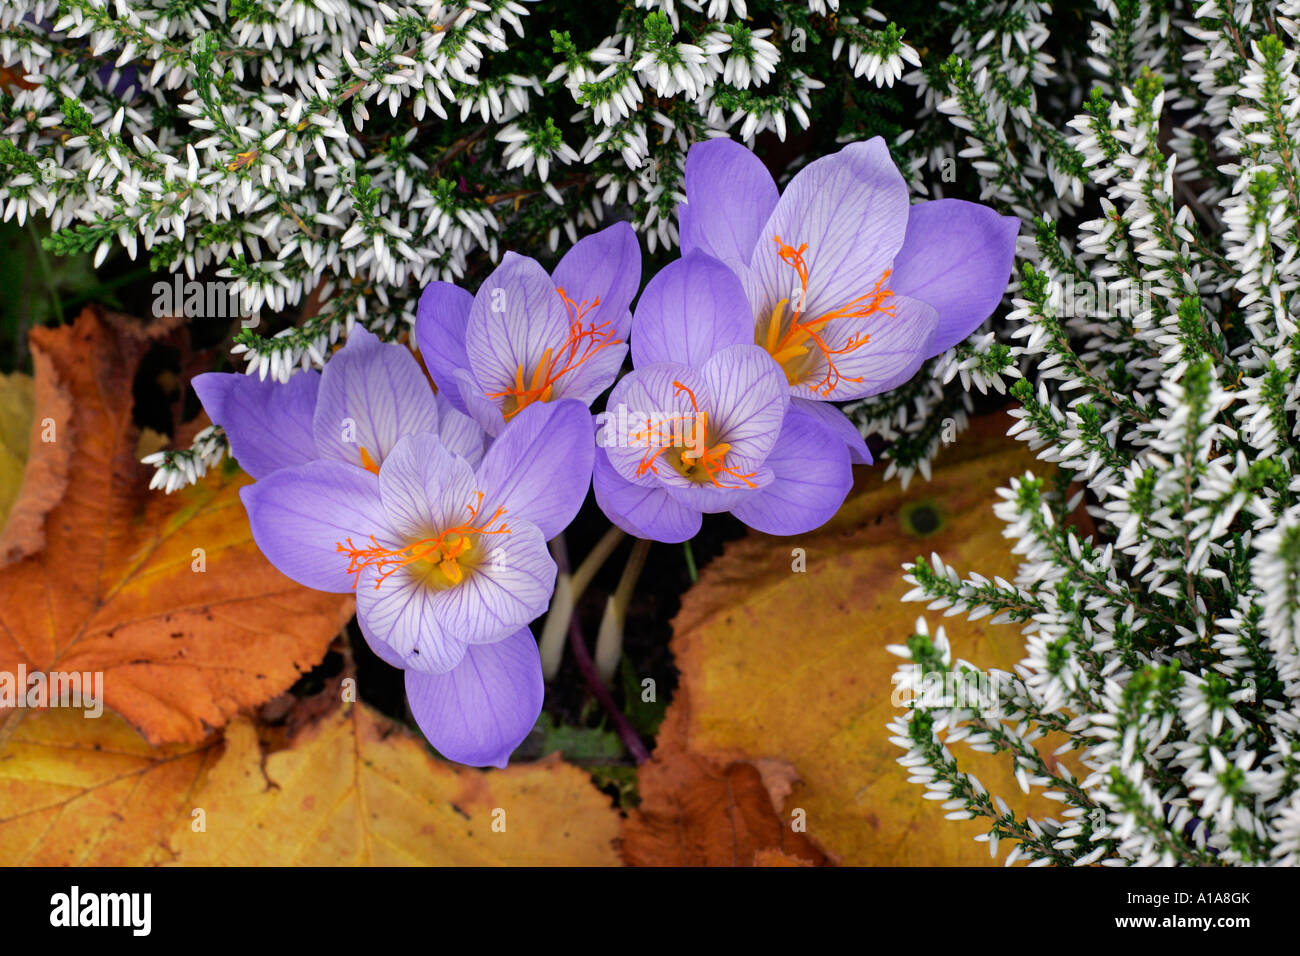 Flowering autumn-crocusses with heather (Crocus pulchellus) and (Calluna) Stock Photo